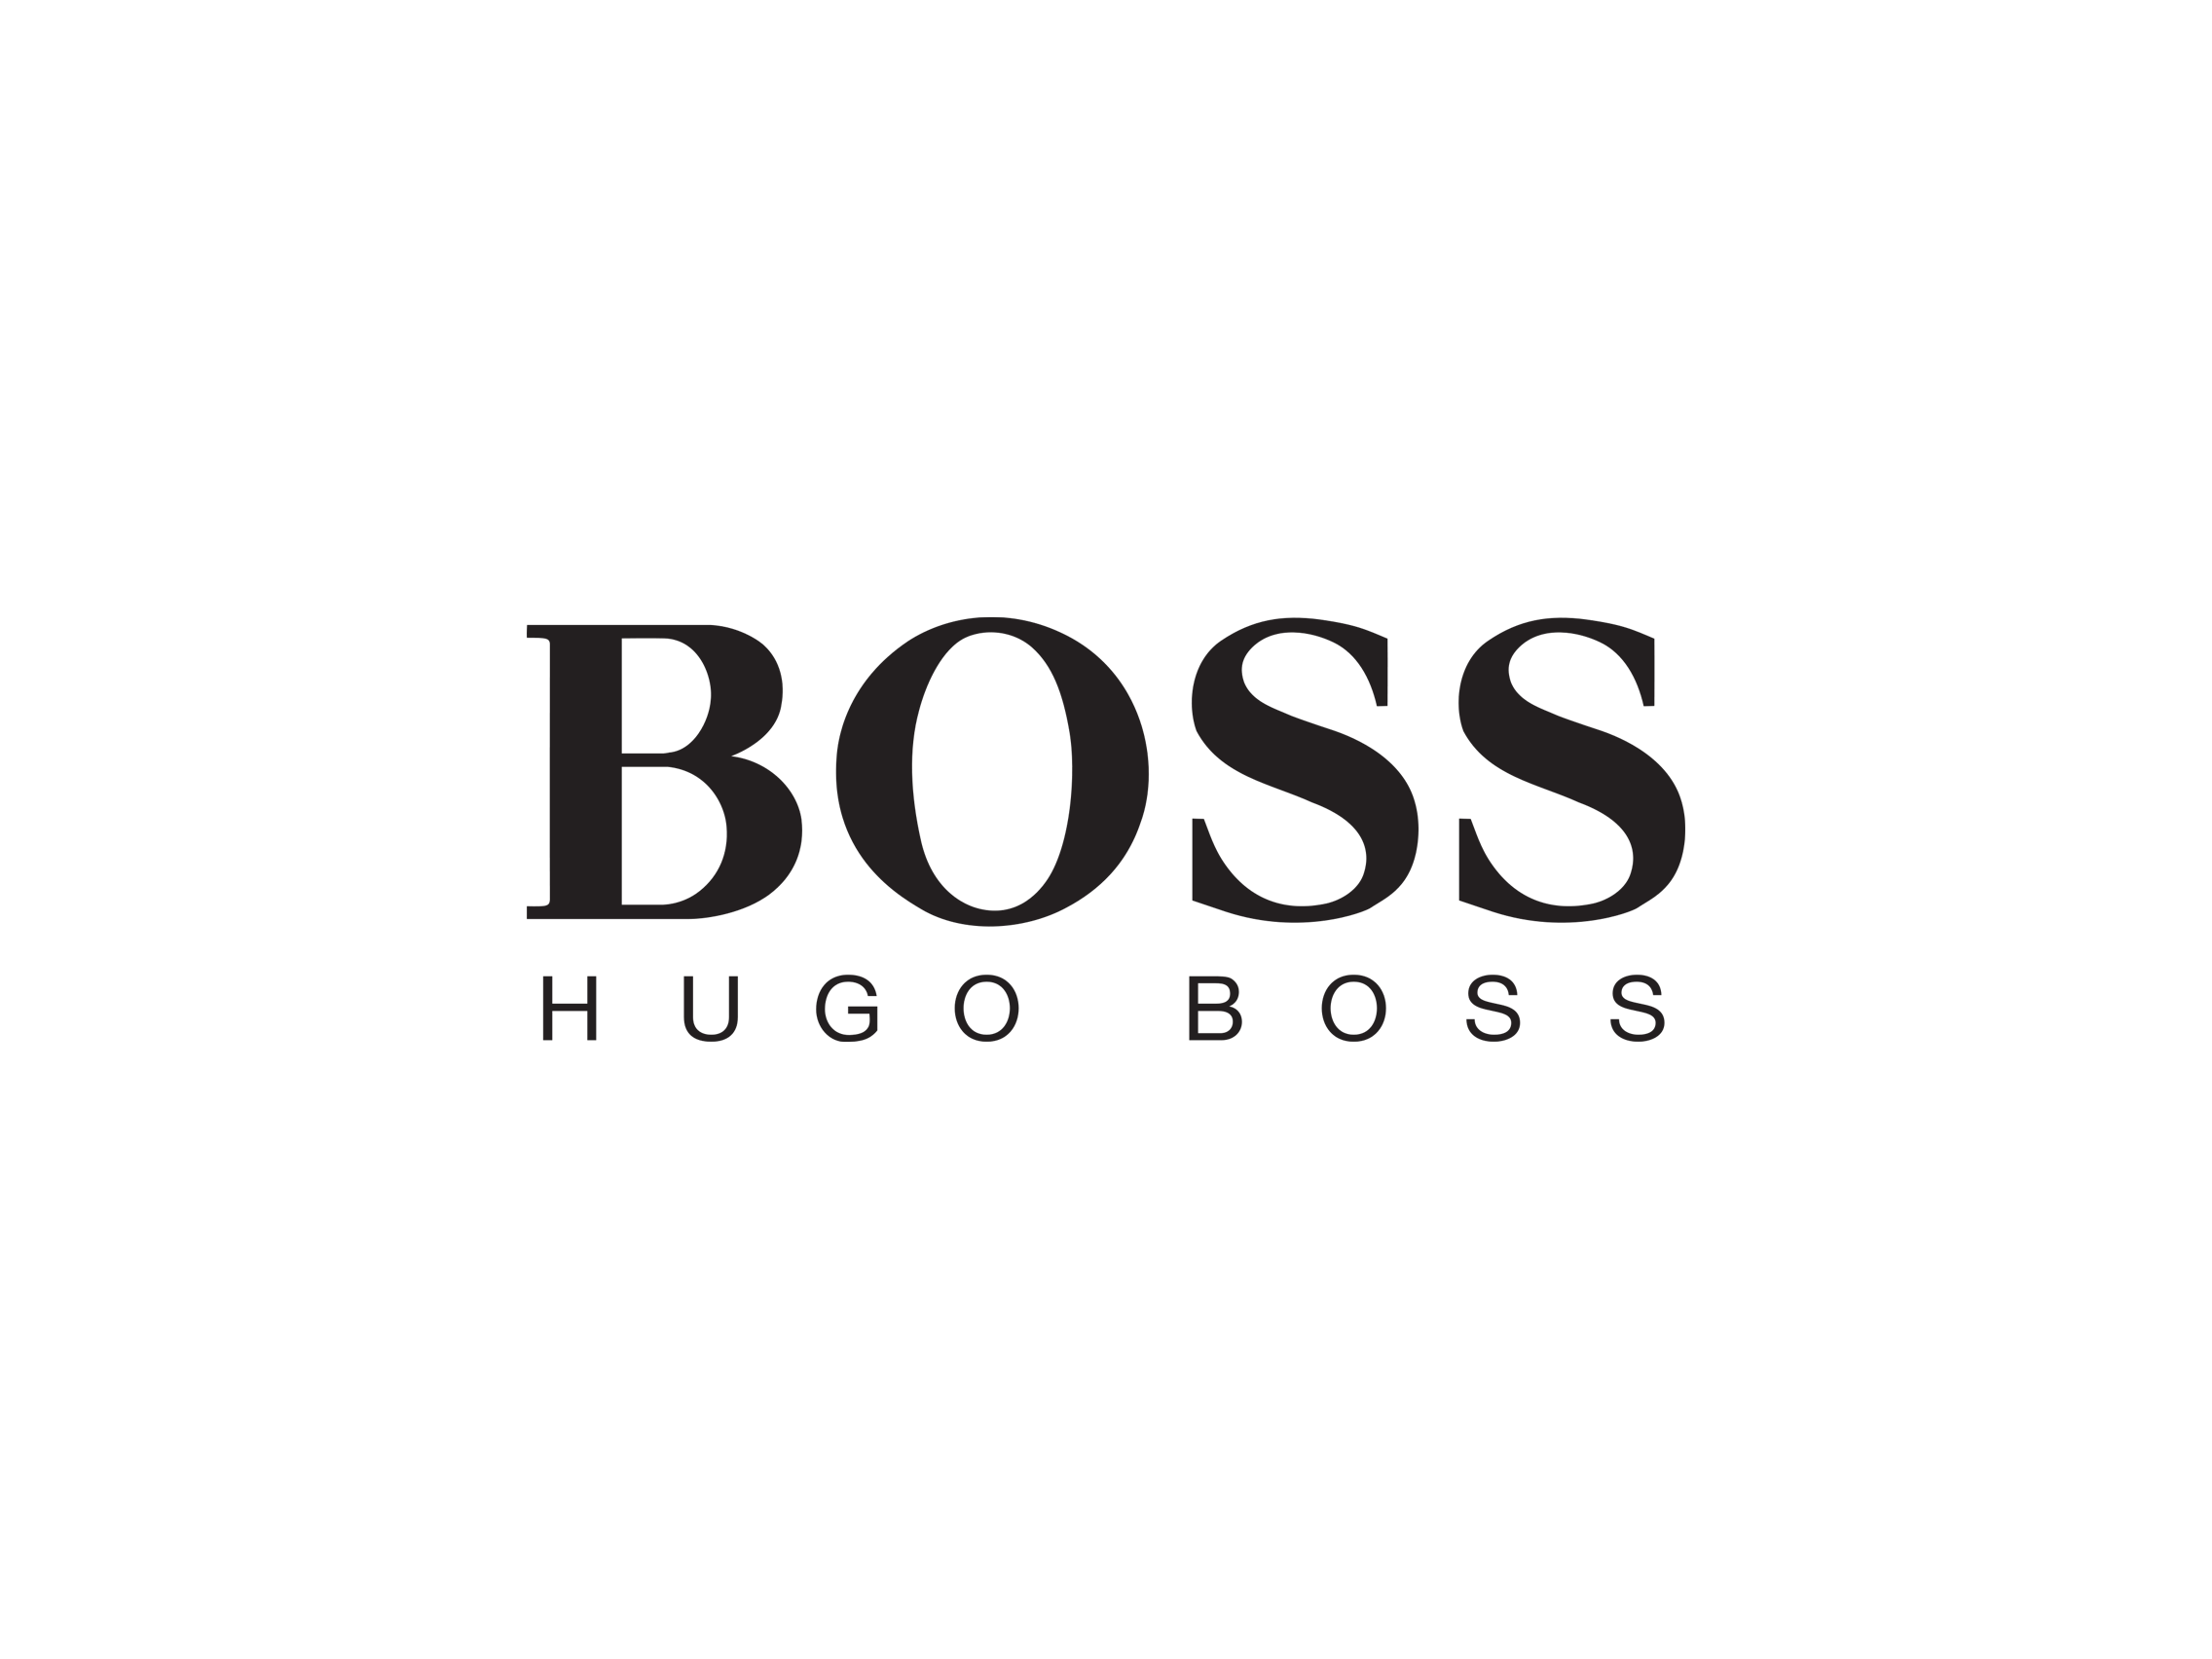 Хьюго босс лого. Хьюго босс мужские духи логотип. Хьюго босс надпись. Хьюго босс бренды Хьюго и босс.